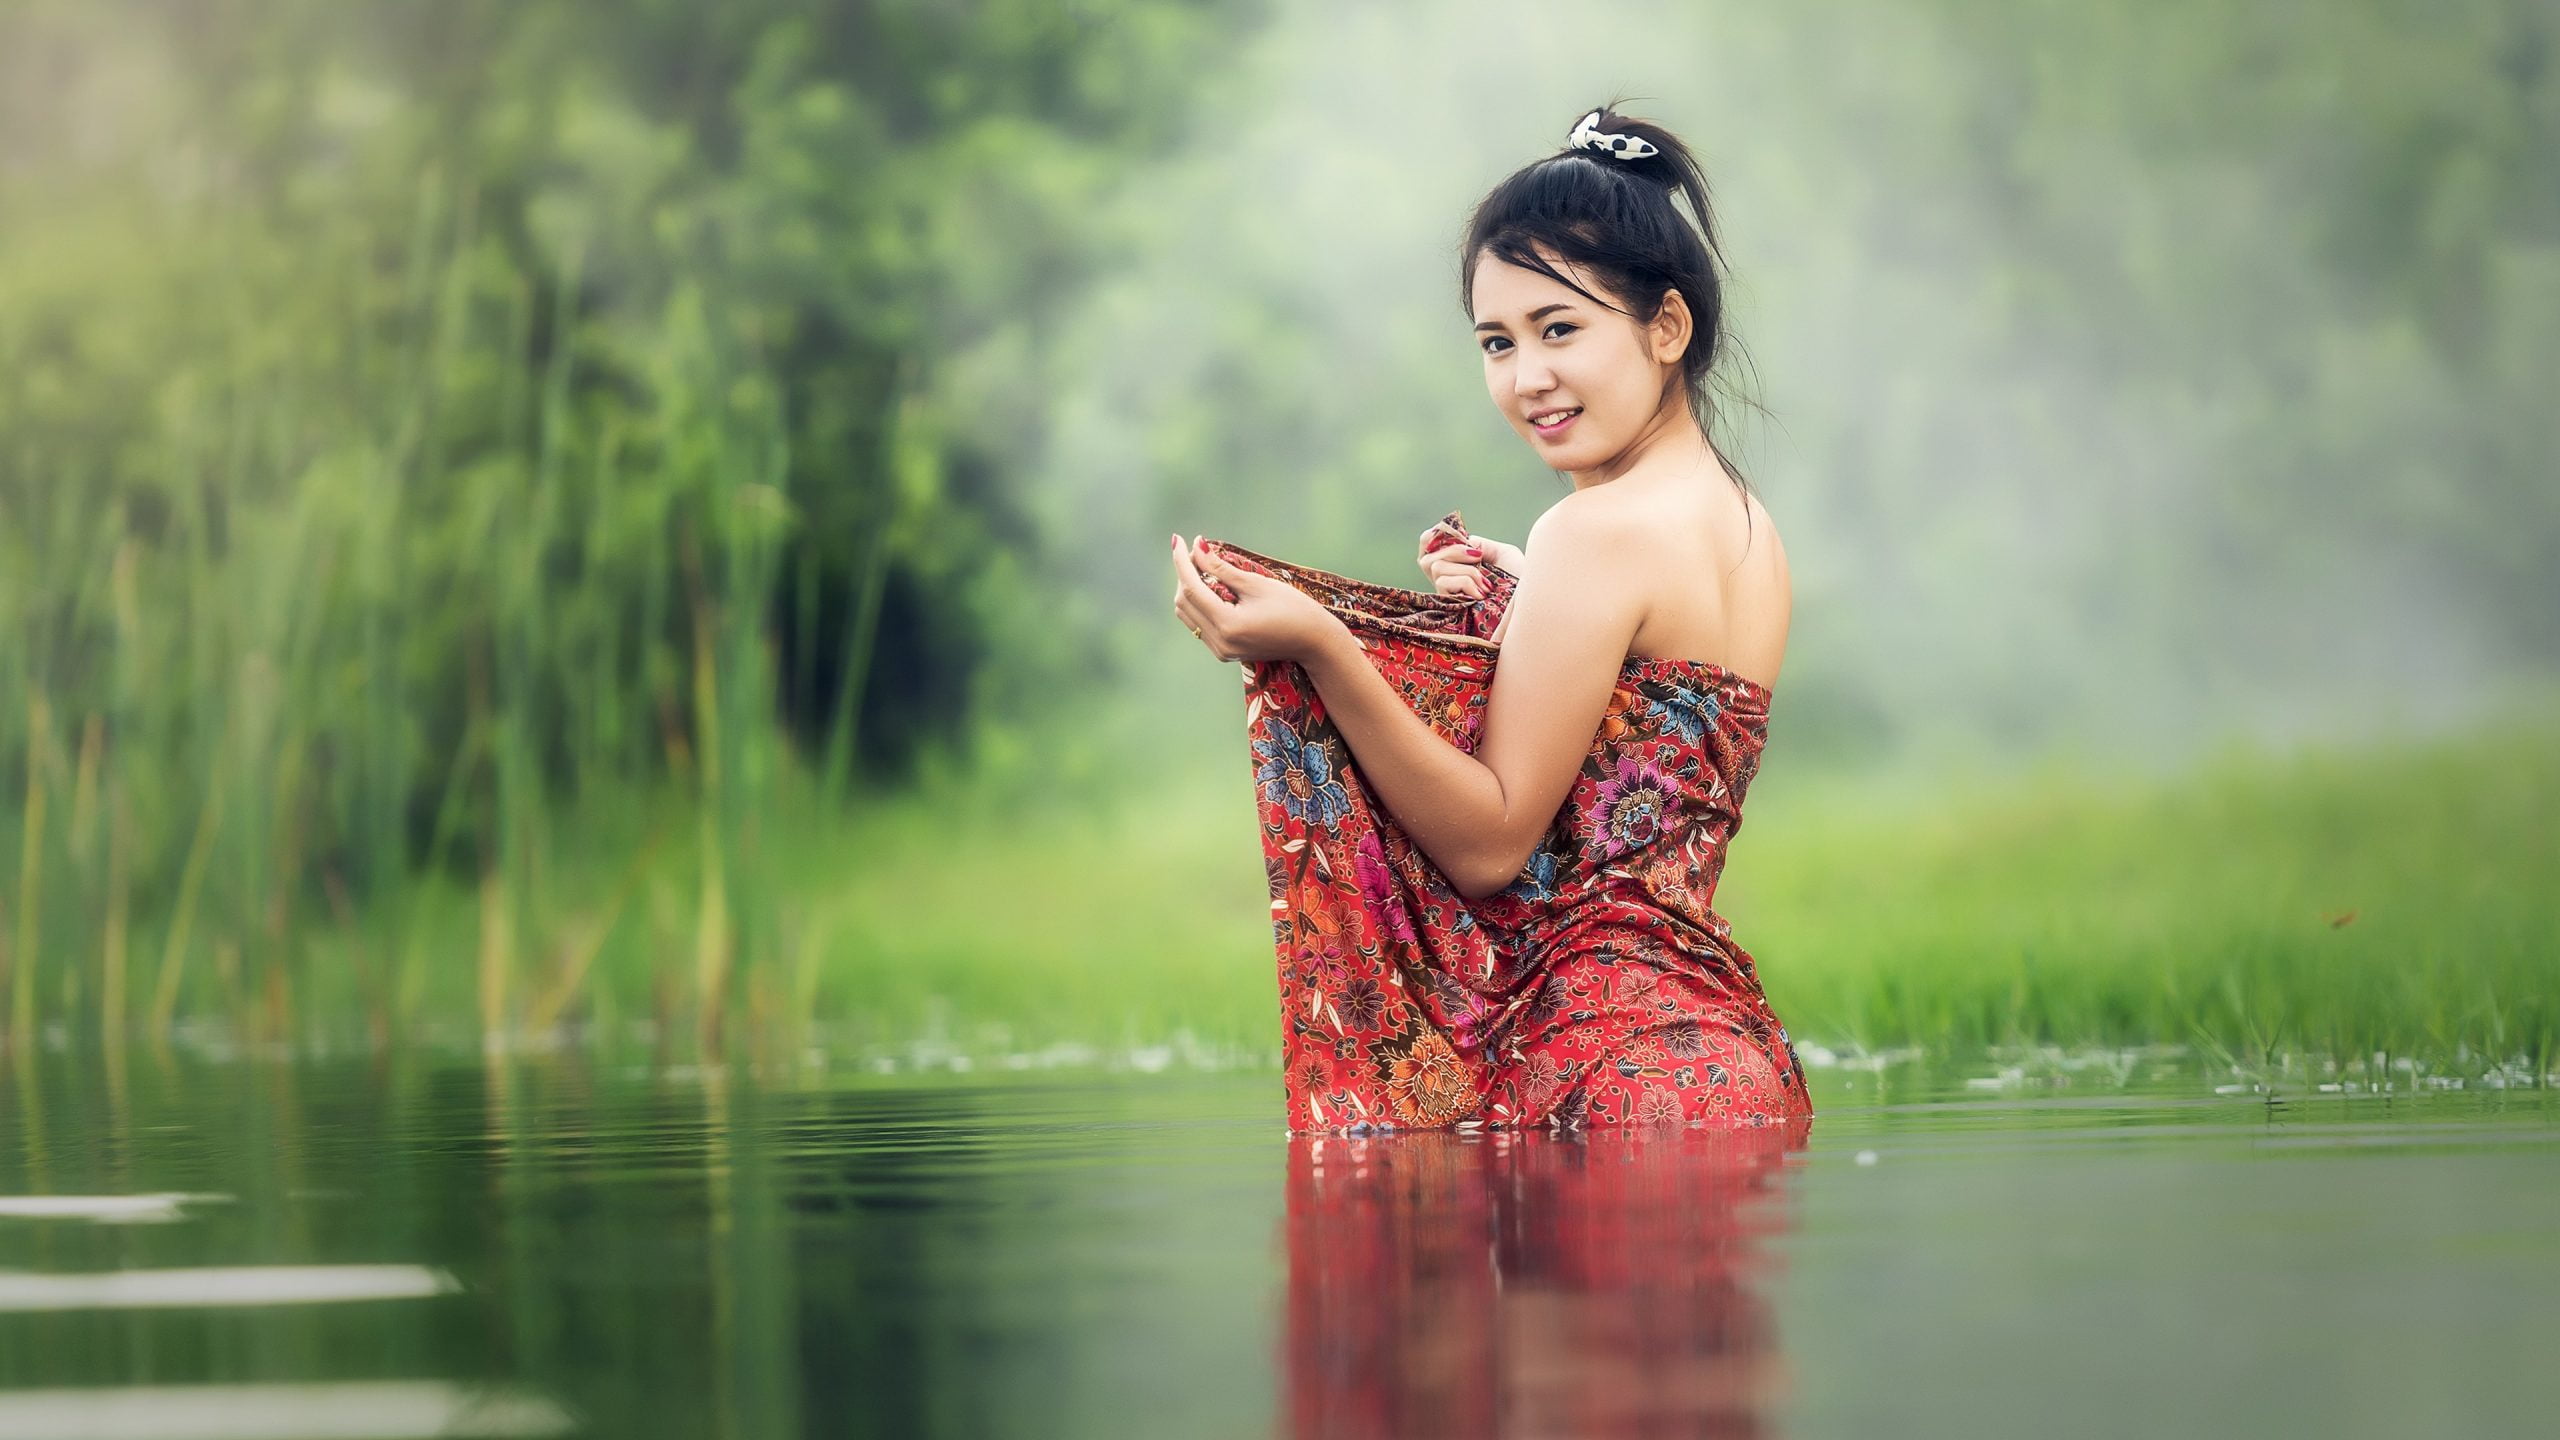 Asian Model In Water - HD Wallpaper 